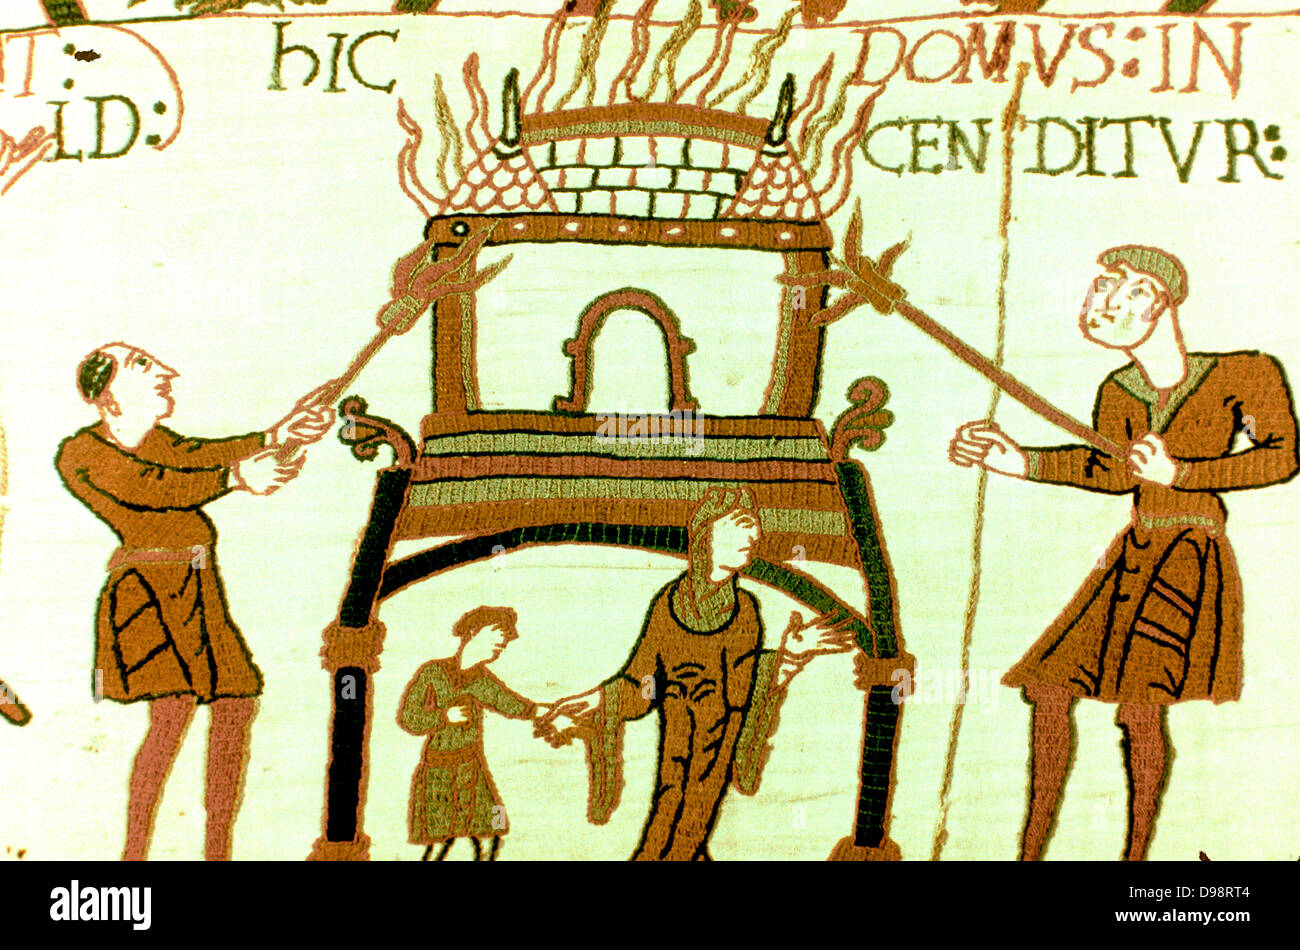 Bayeux 1067: eine bildliche Darstellung der Eroberung Englands durch Wilhelm von der Normandie und der Tod von Harold II. in der Schlacht von Hastings im Jahre 1066. Frau und Kind auf der Flucht aus dem brennenden Haus. Bettwäsche aus Spinnstoffen Stockfoto